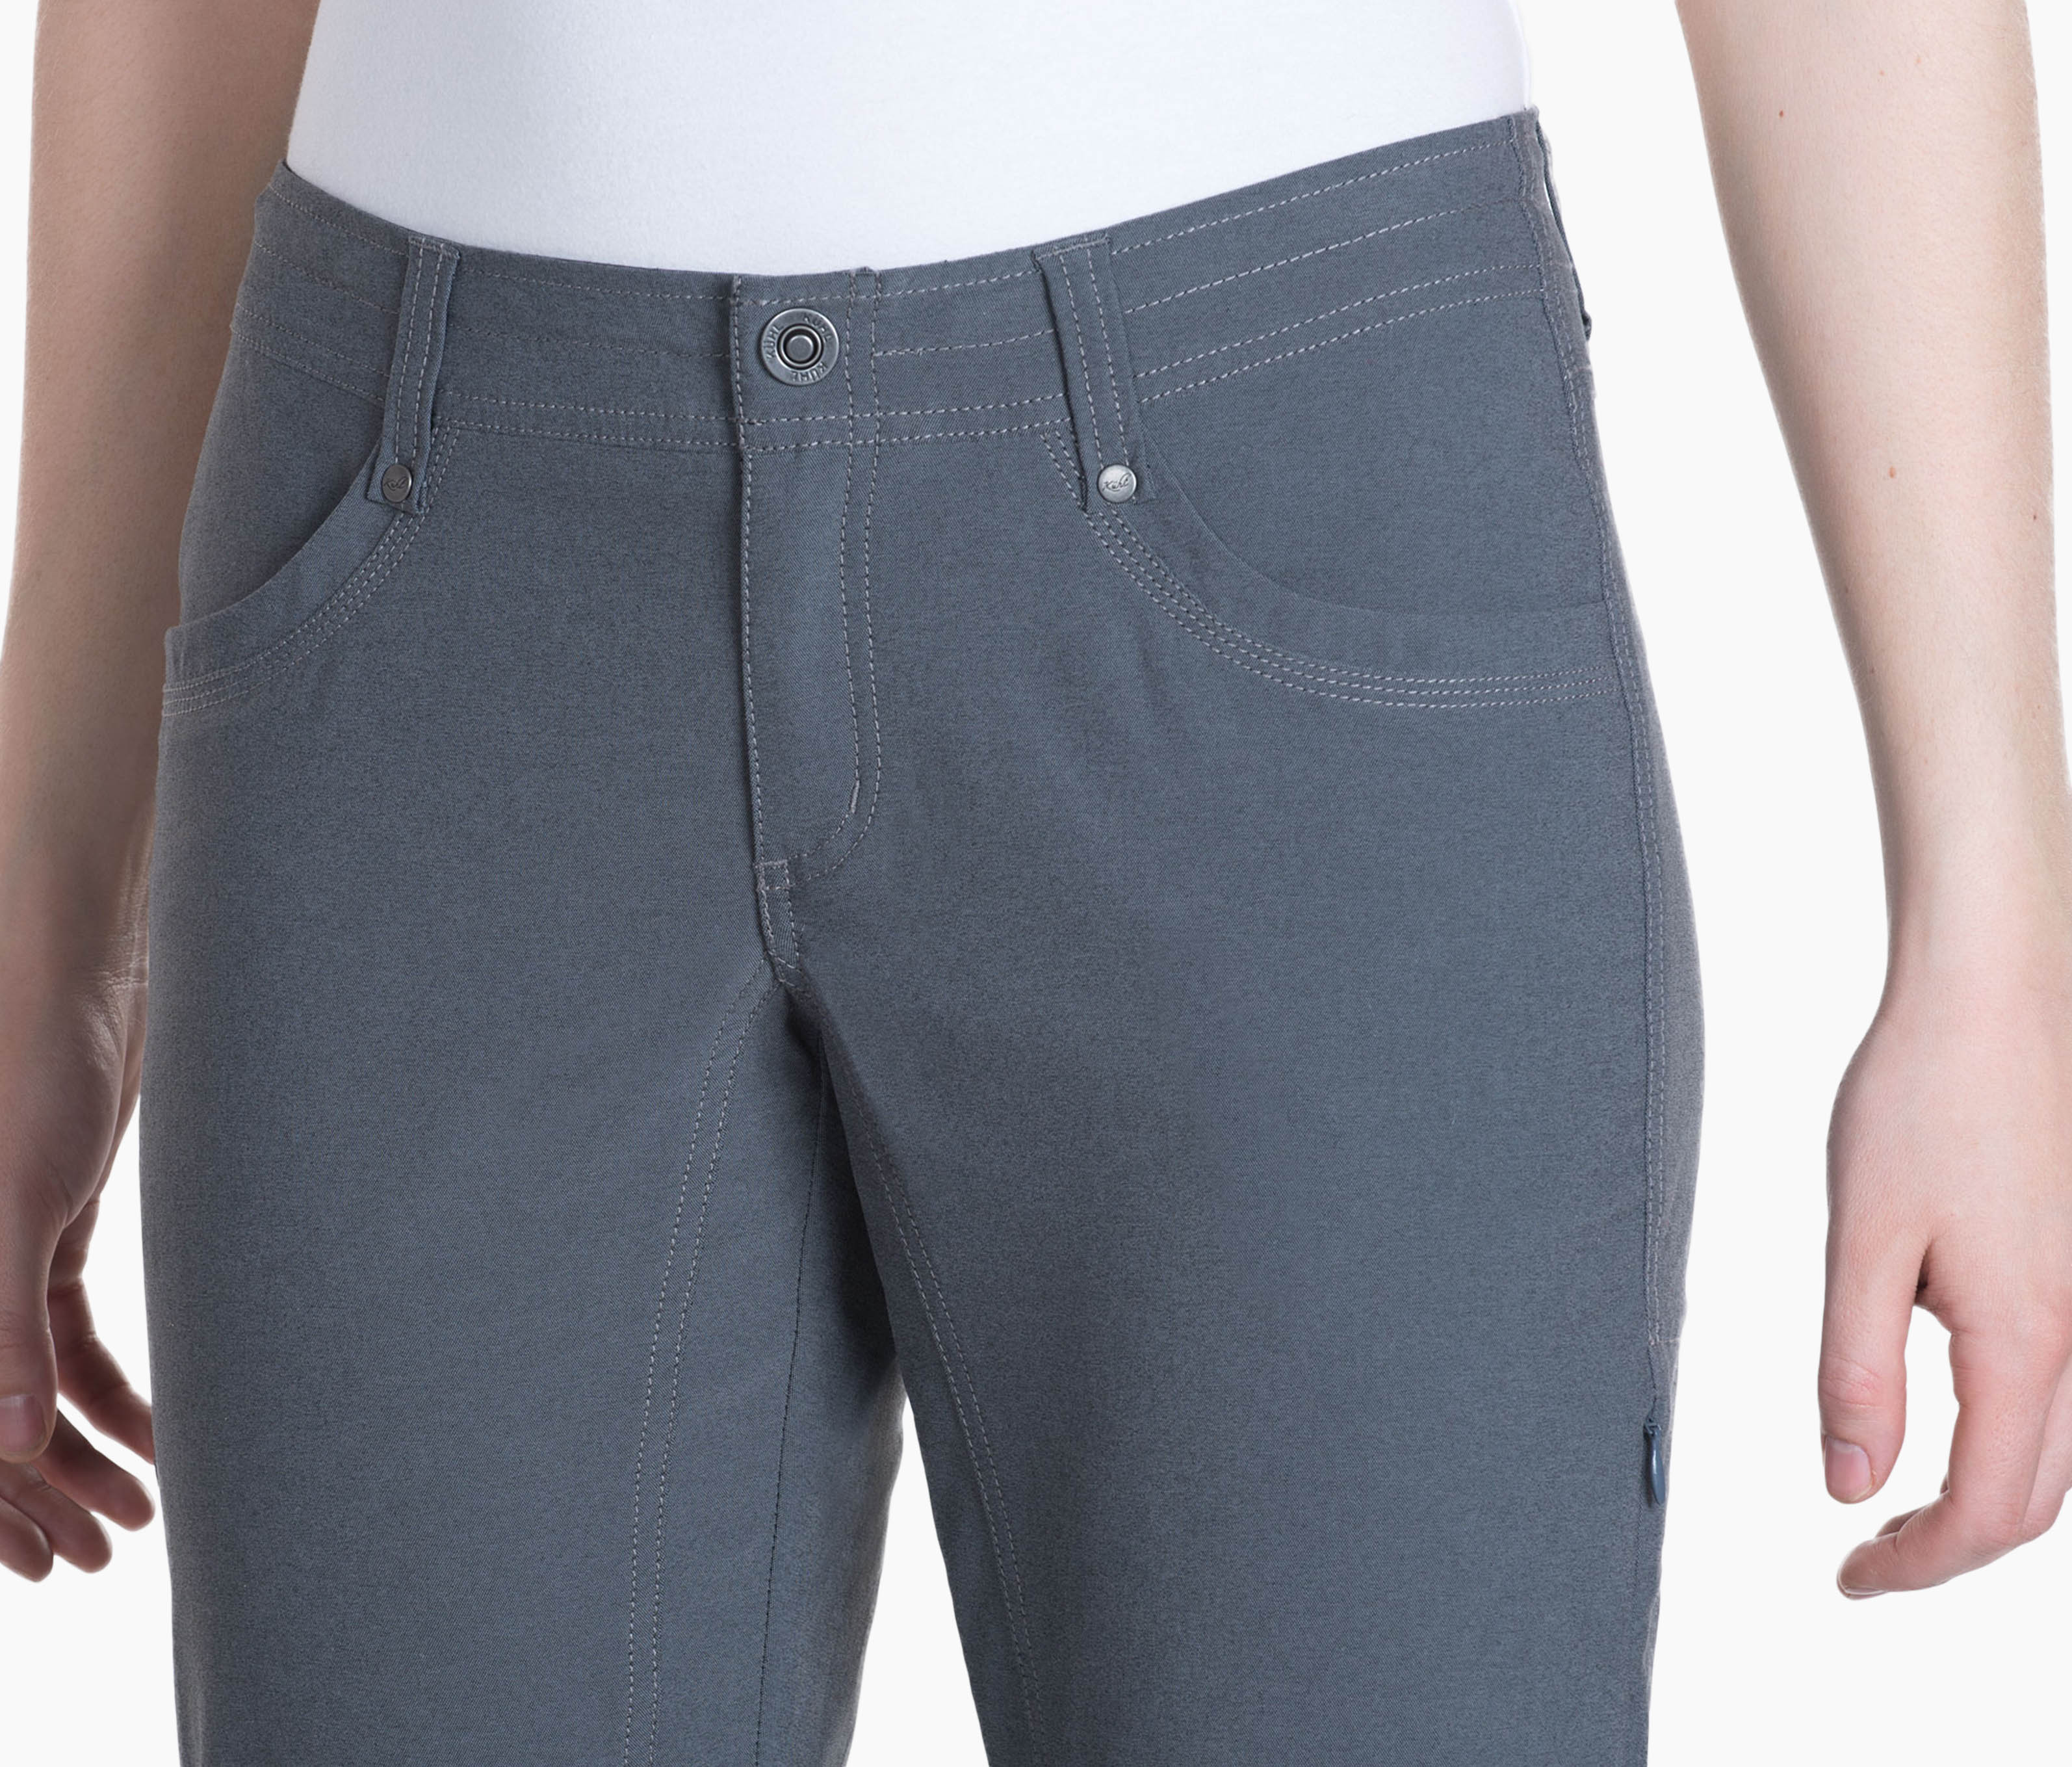 Item 951547 - KUHL Trekr Pants - Women's - - Size 12 L